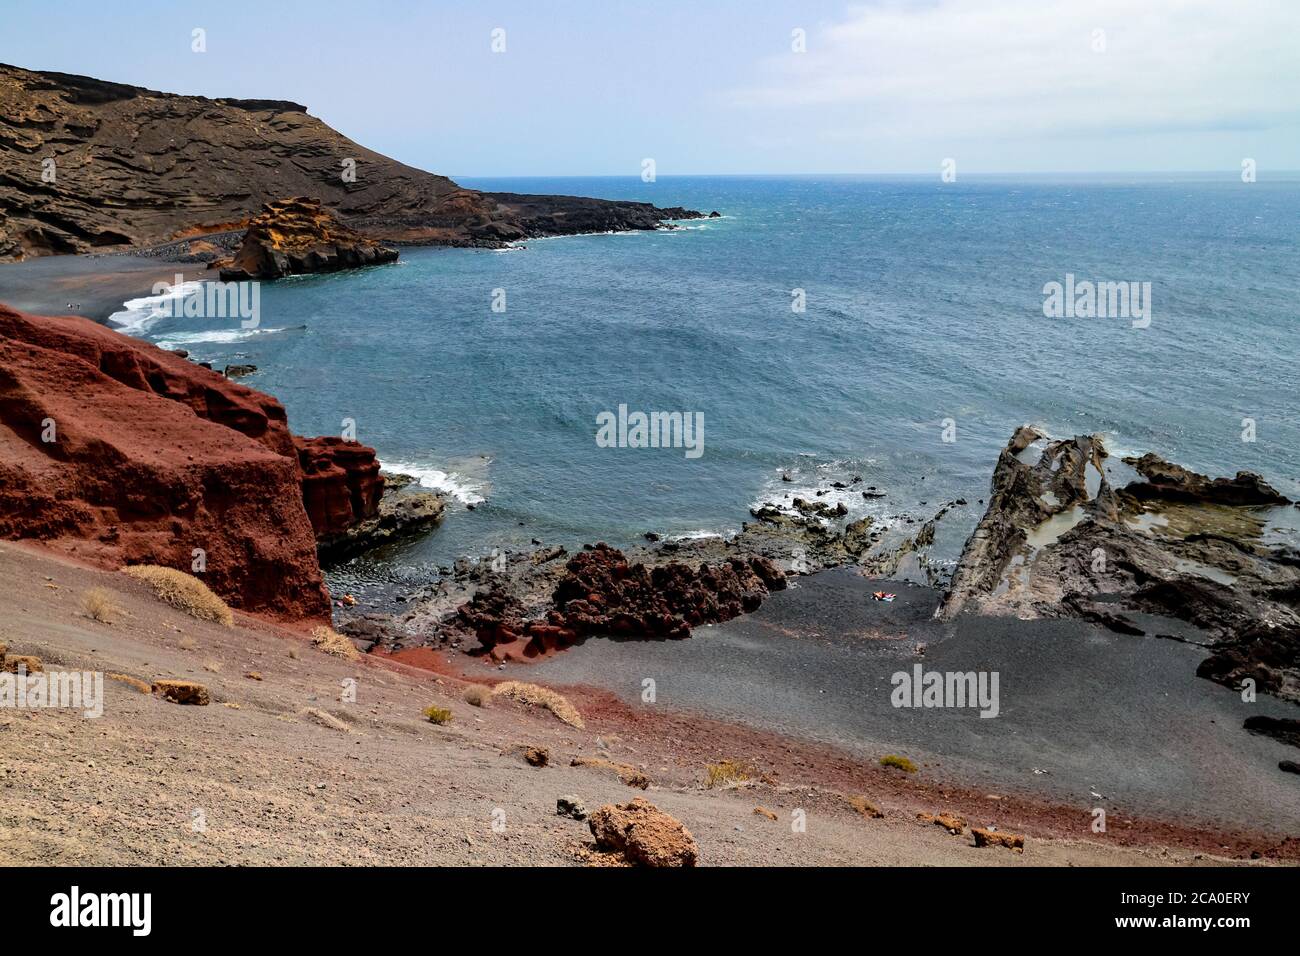 Felsige vulkanische Küste mit roter Erde und schwarzem Sand am Atlantik in El Golfo, Lanzarote, Kanarische Inseln, Spanien. Stockfoto